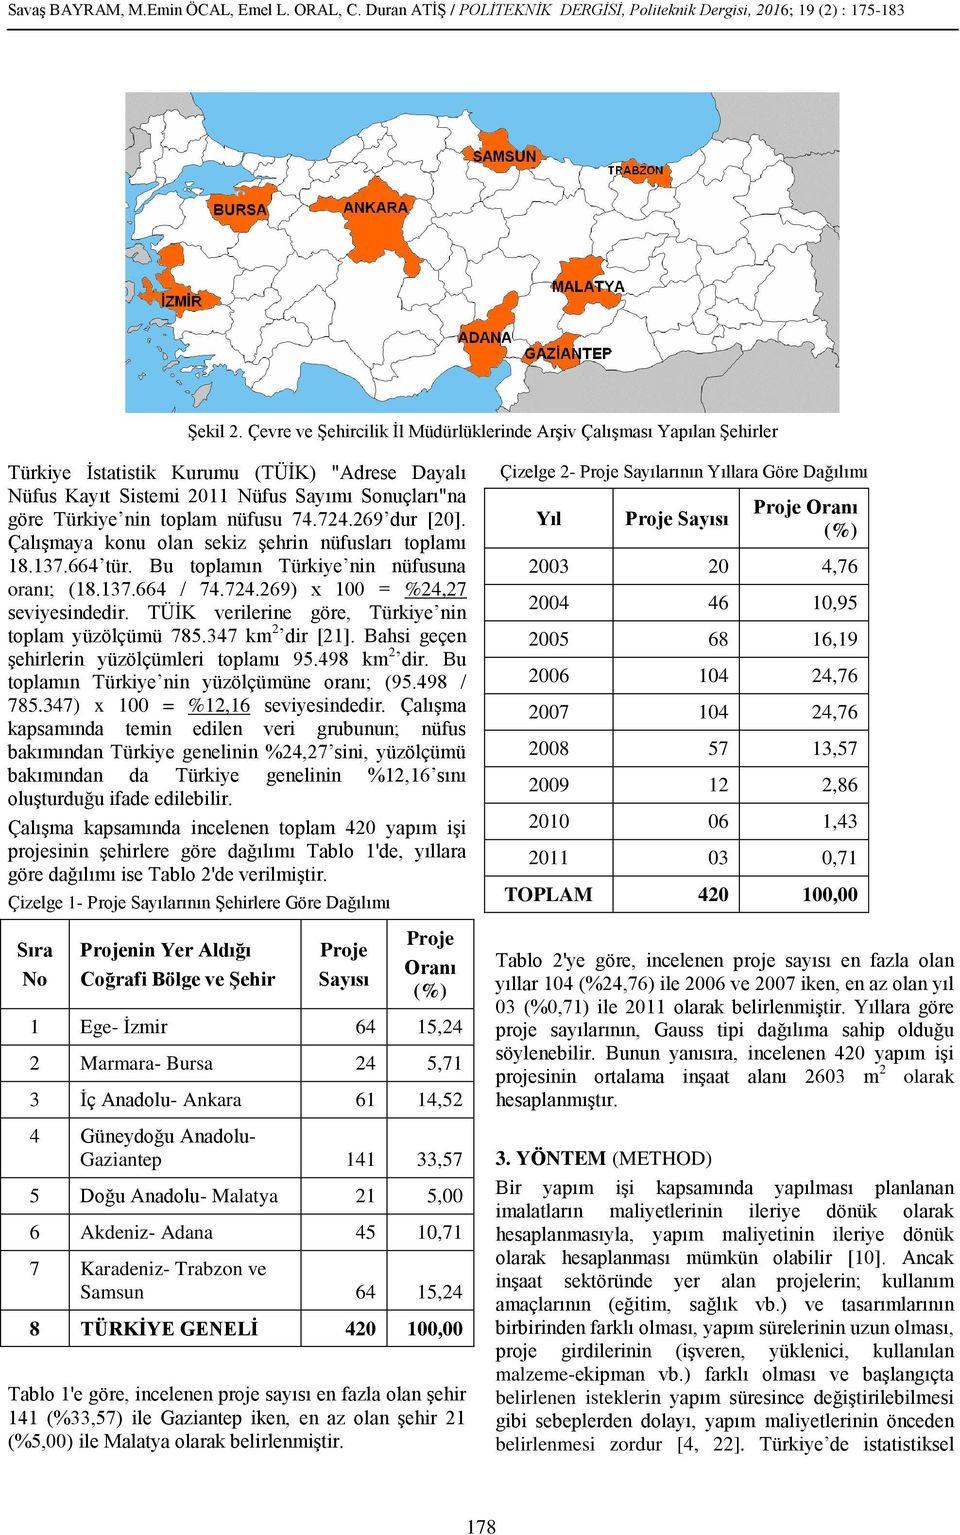 nüfusu 74.724.269 dur [20]. Çalışmaya konu olan sekiz şehrin nüfusları toplamı 18.137.664 tür. Bu toplamın Türkiye nin nüfusuna oranı; (18.137.664 / 74.724.269) x 100 = %24,27 seviyesindedir.